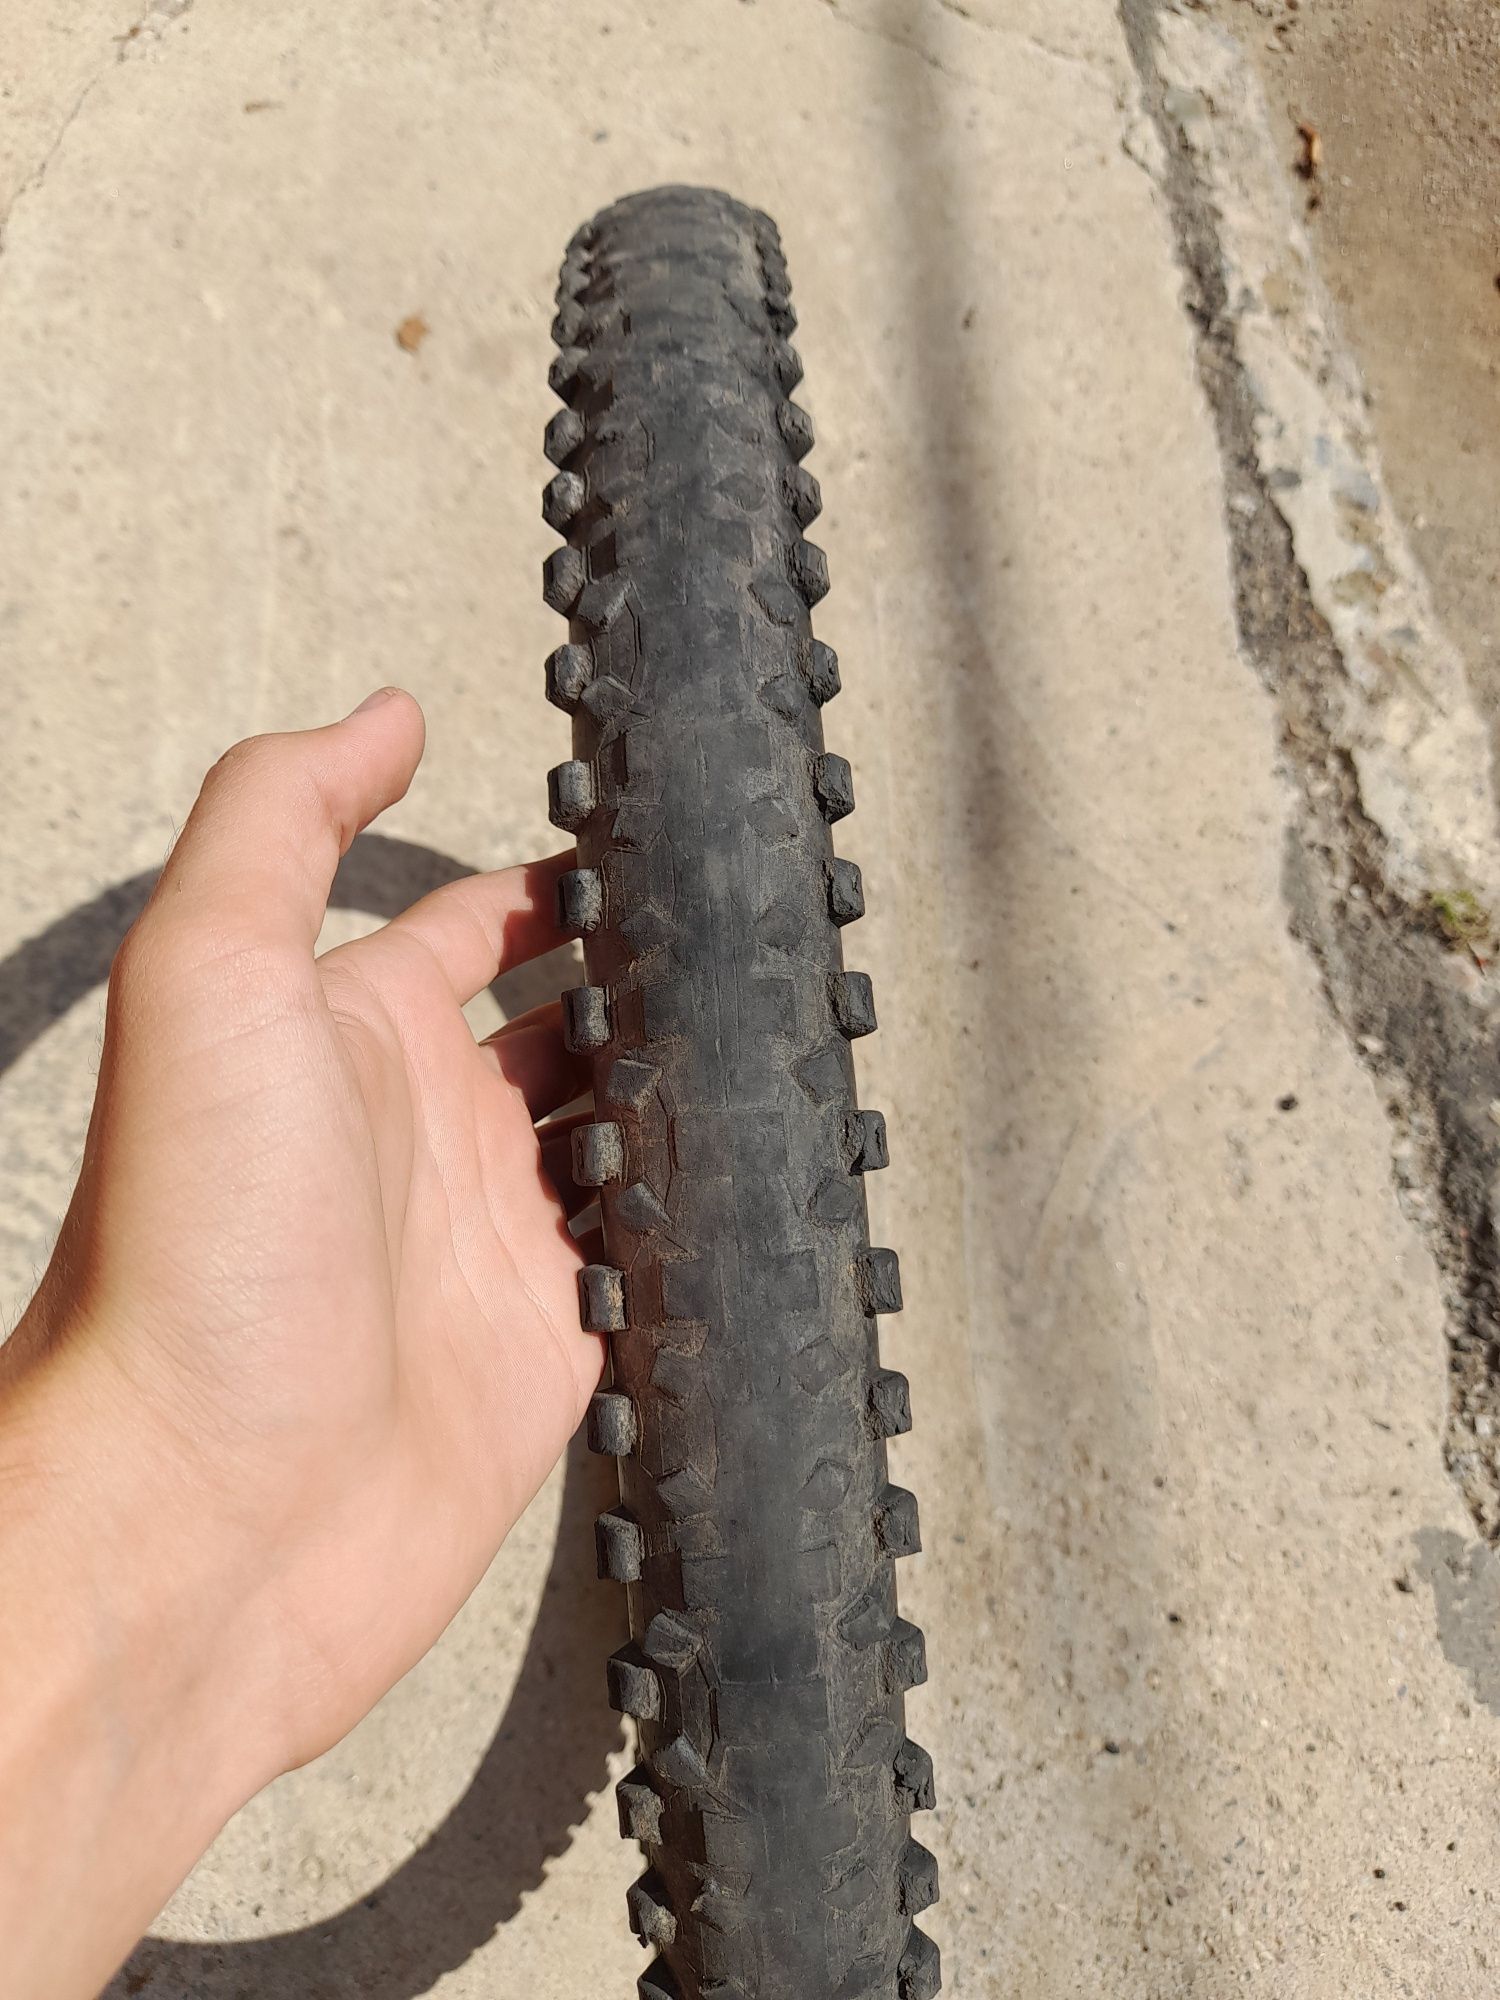 Външни гуми за колело